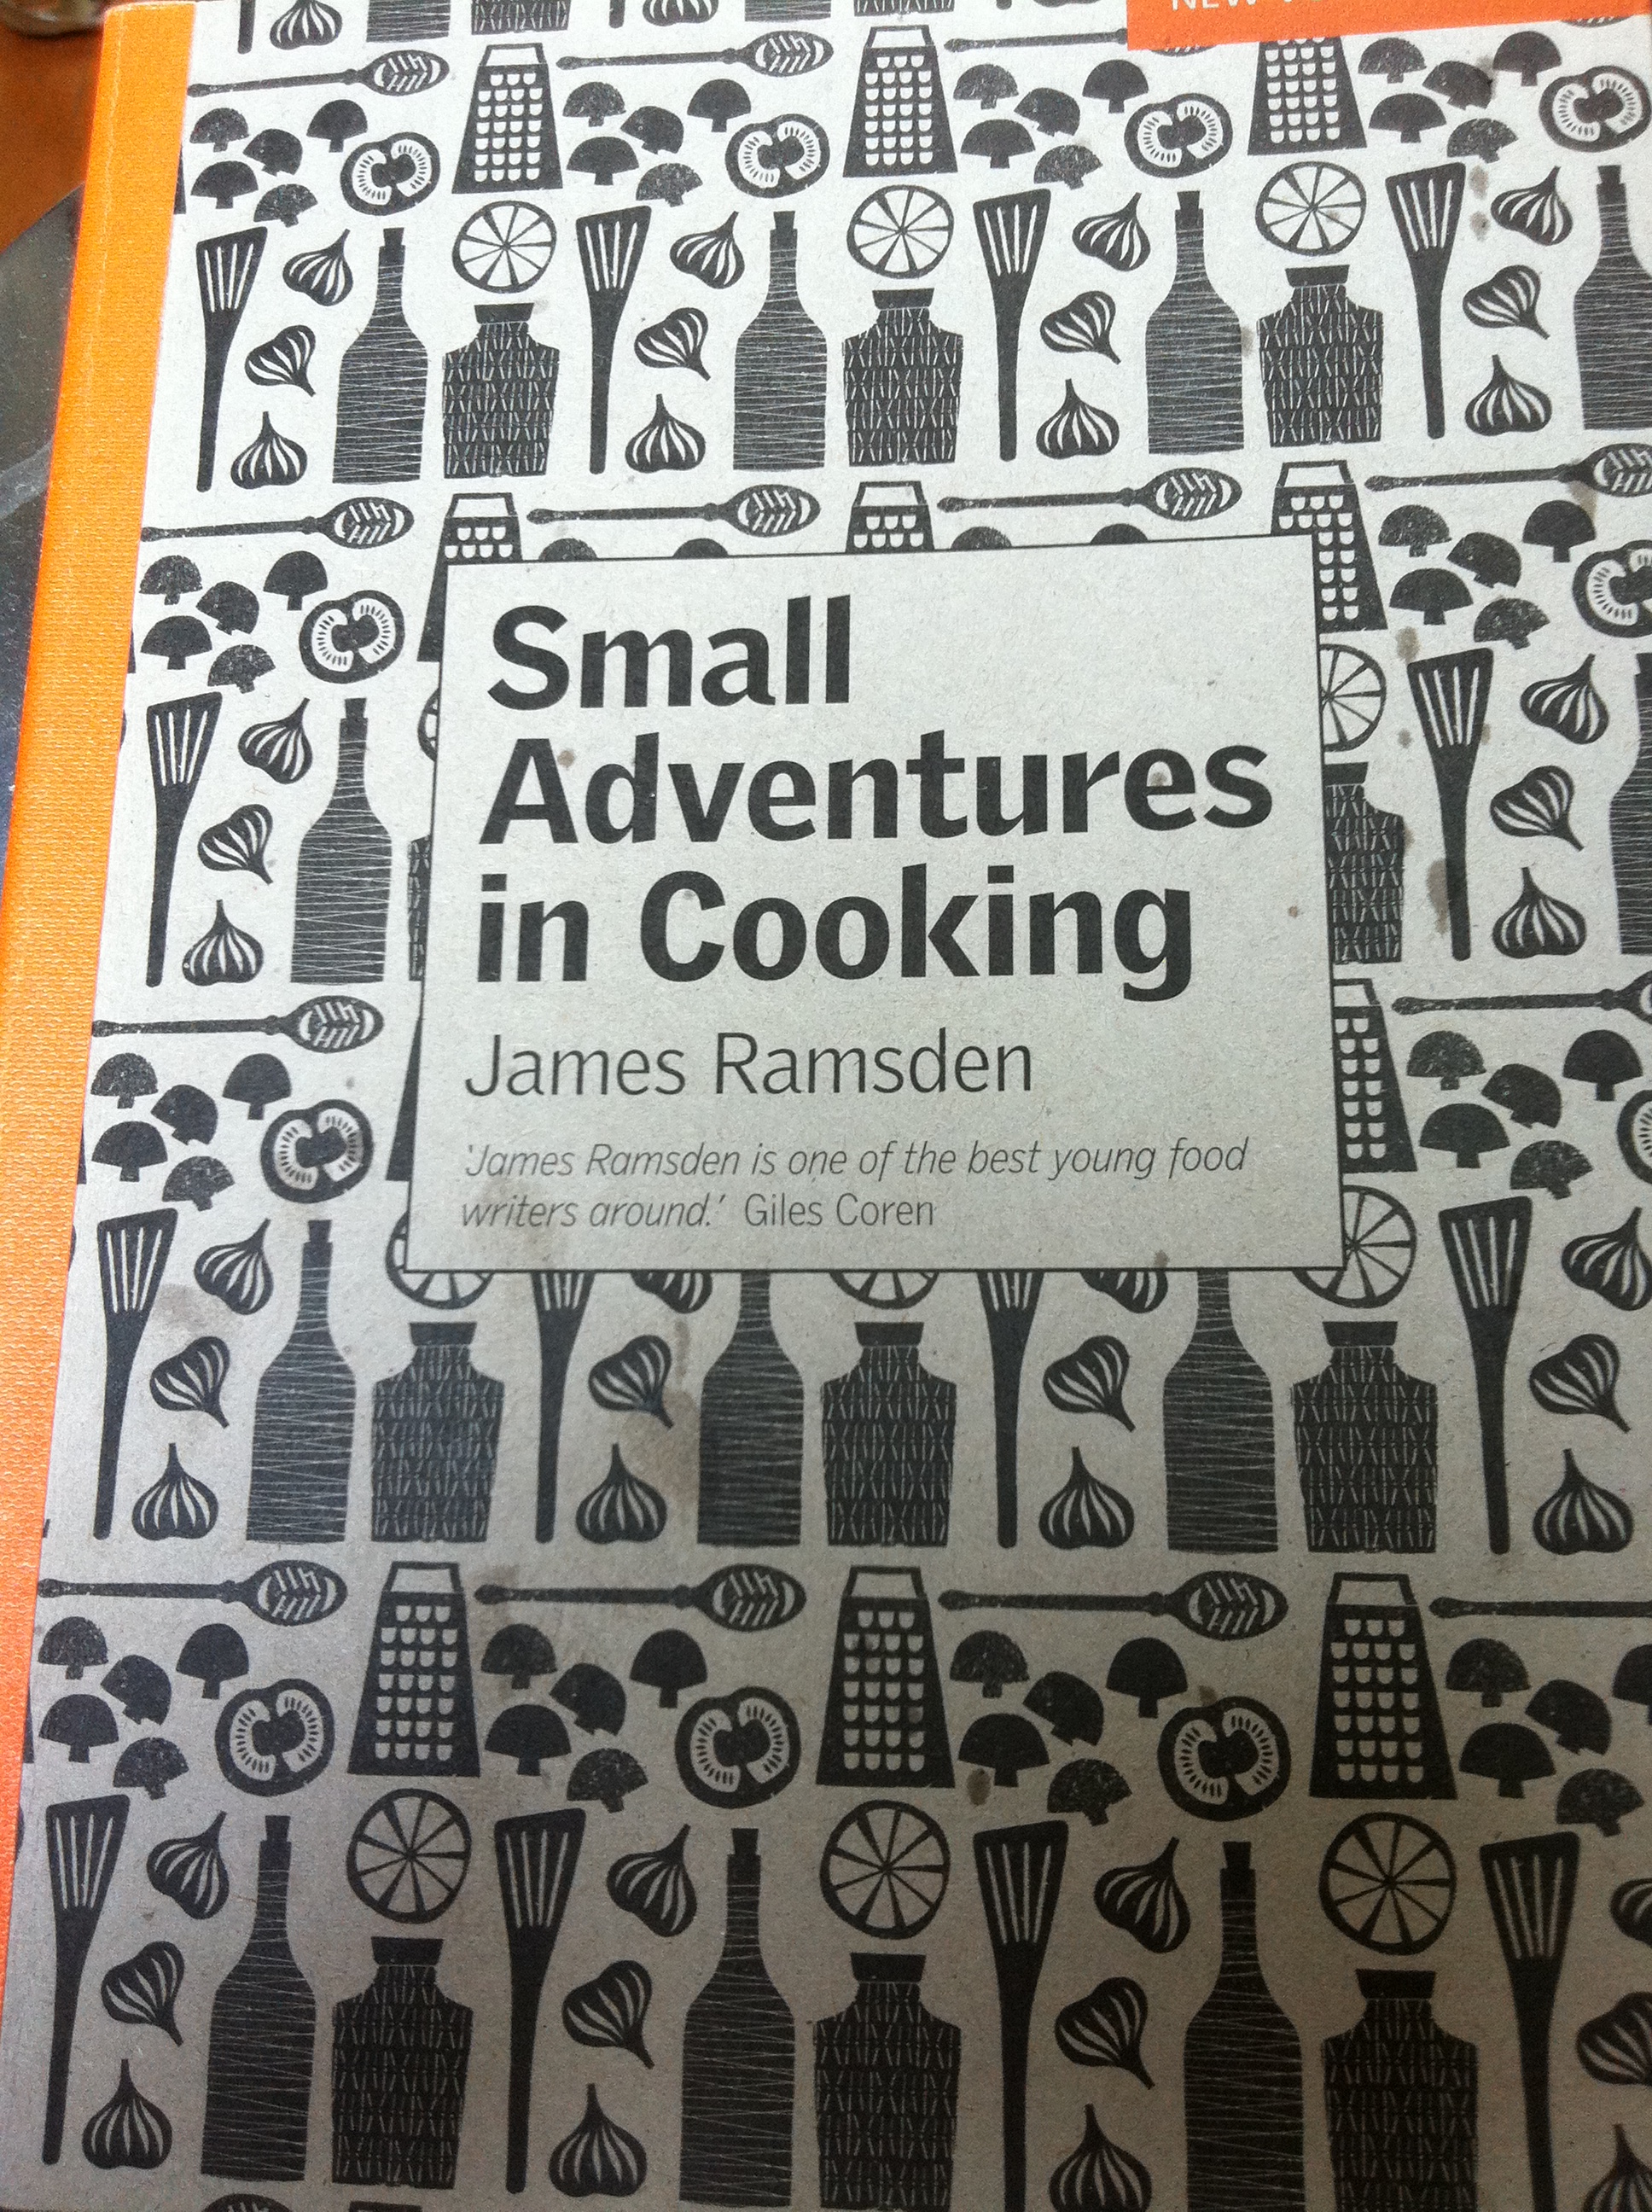 cookbook_james_ramsden